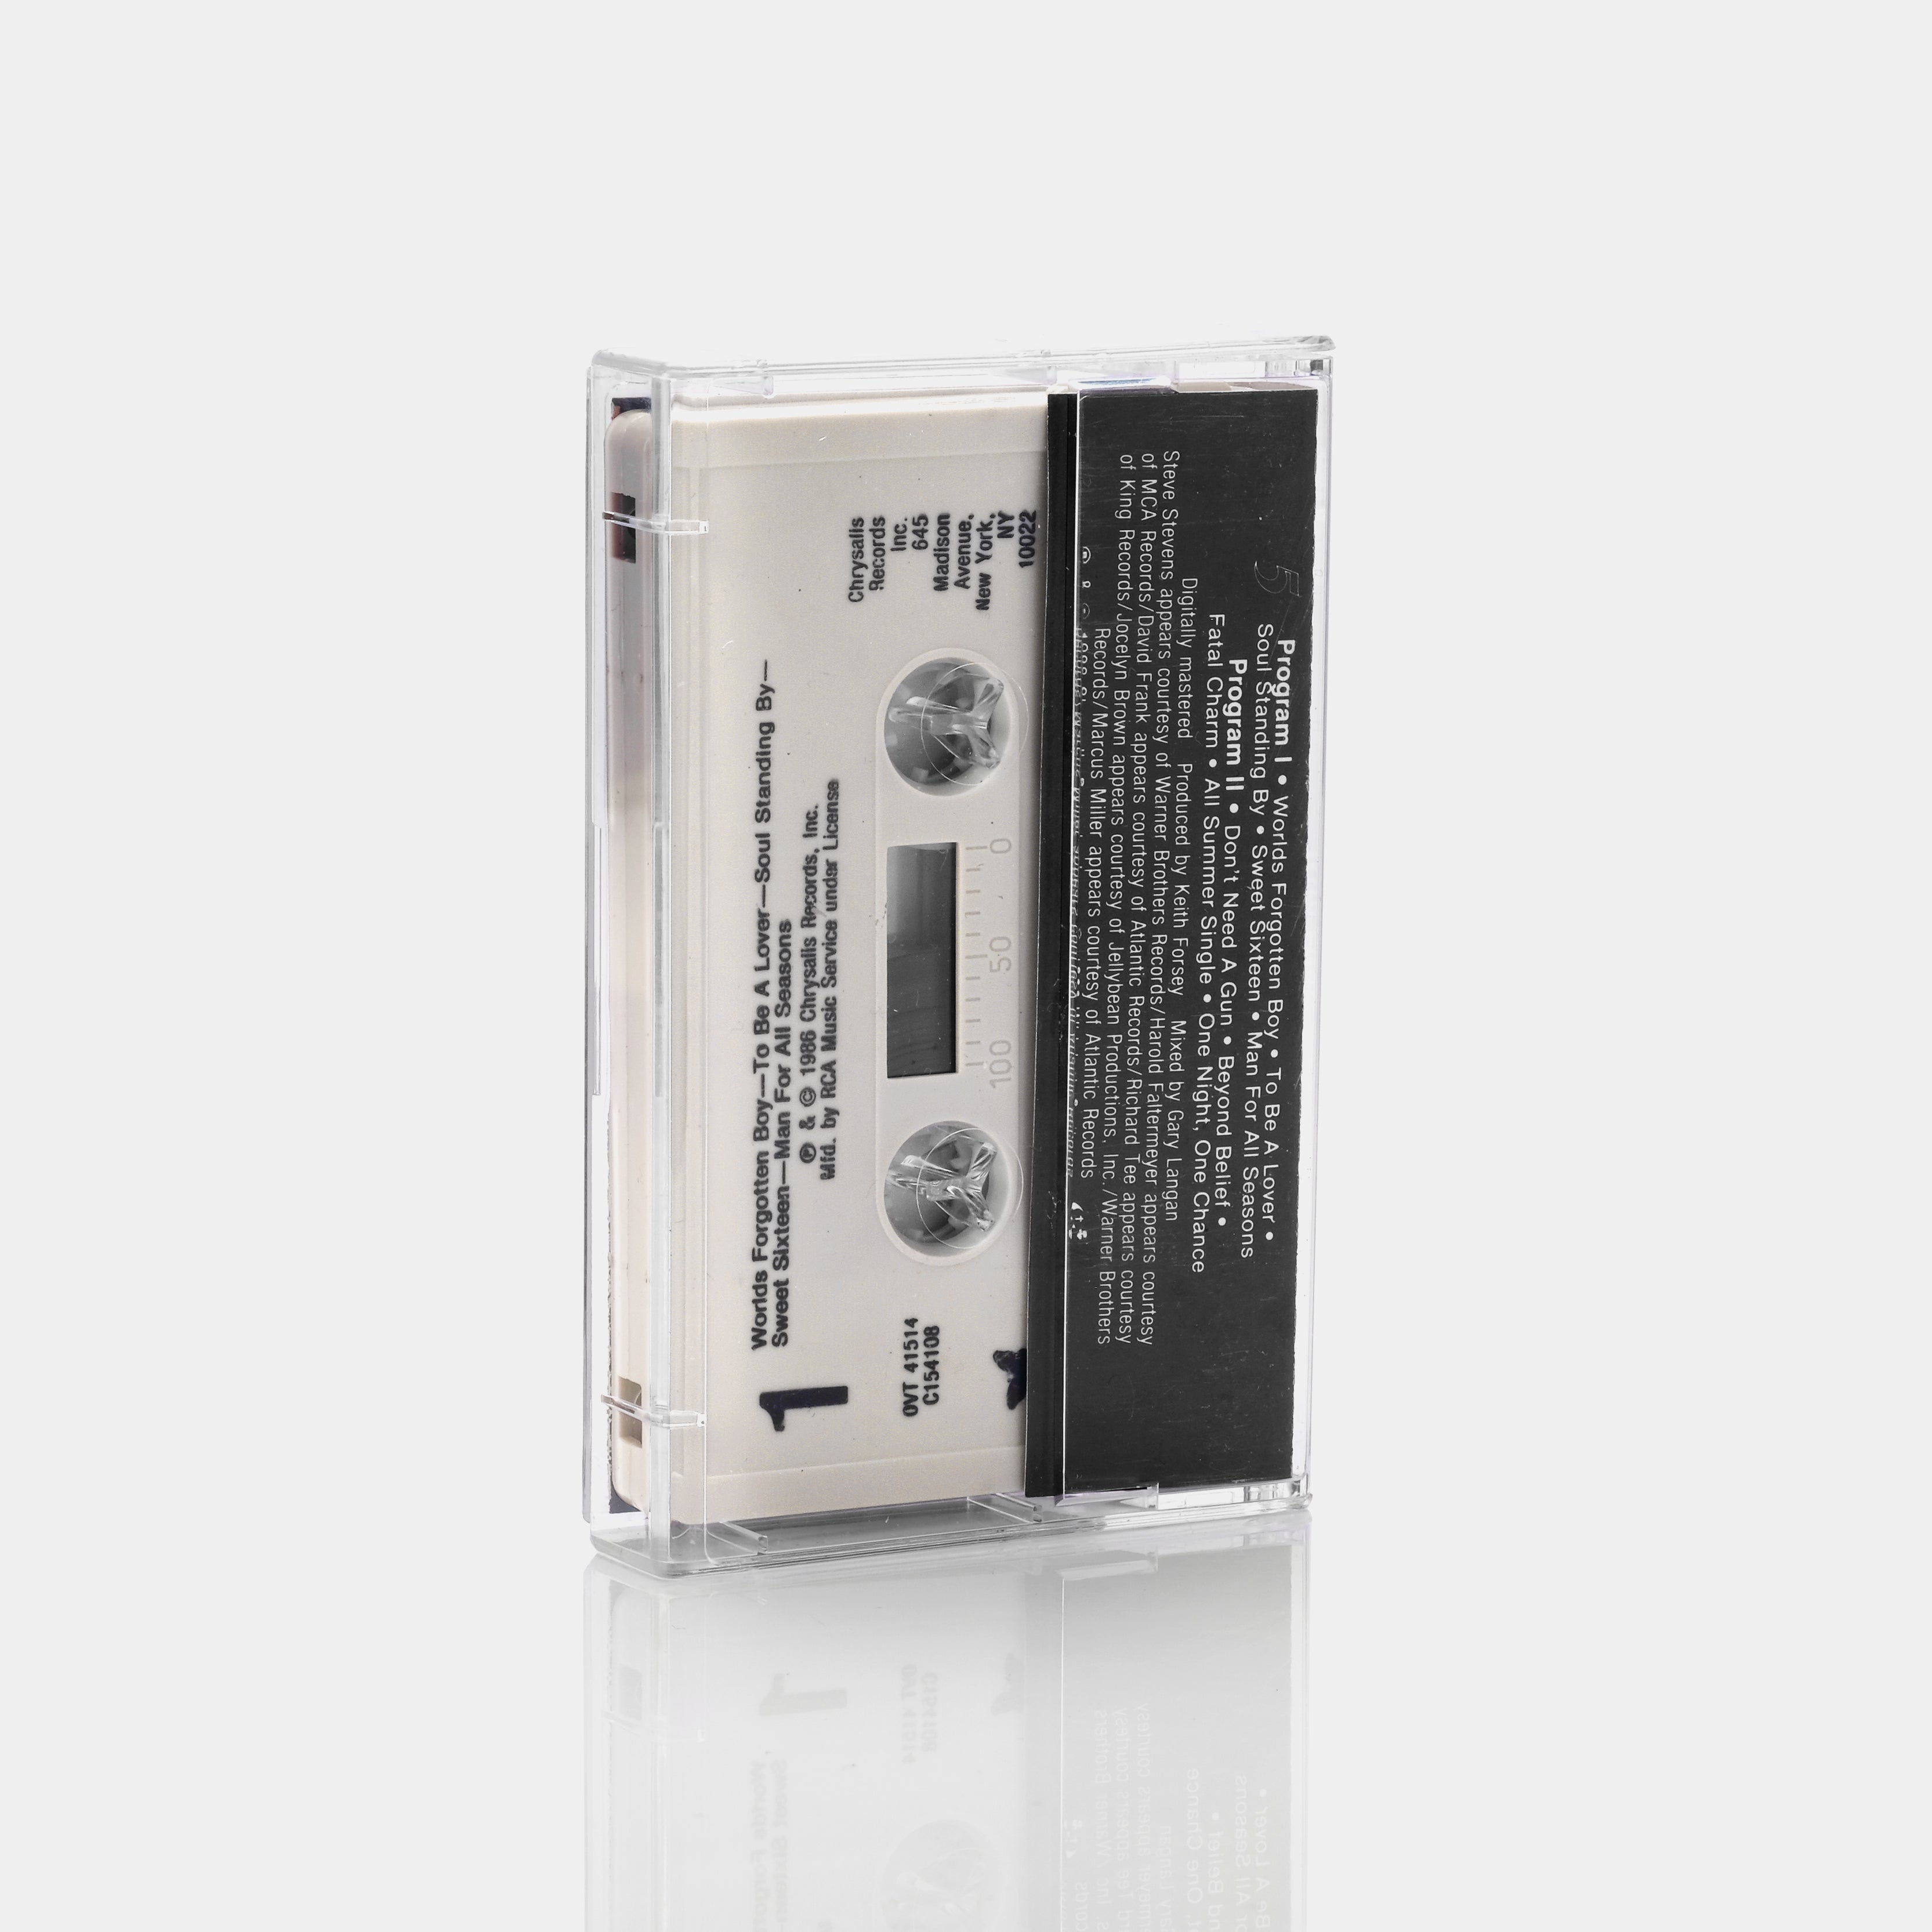 Billy Idol - Whiplash Smile Cassette Tape